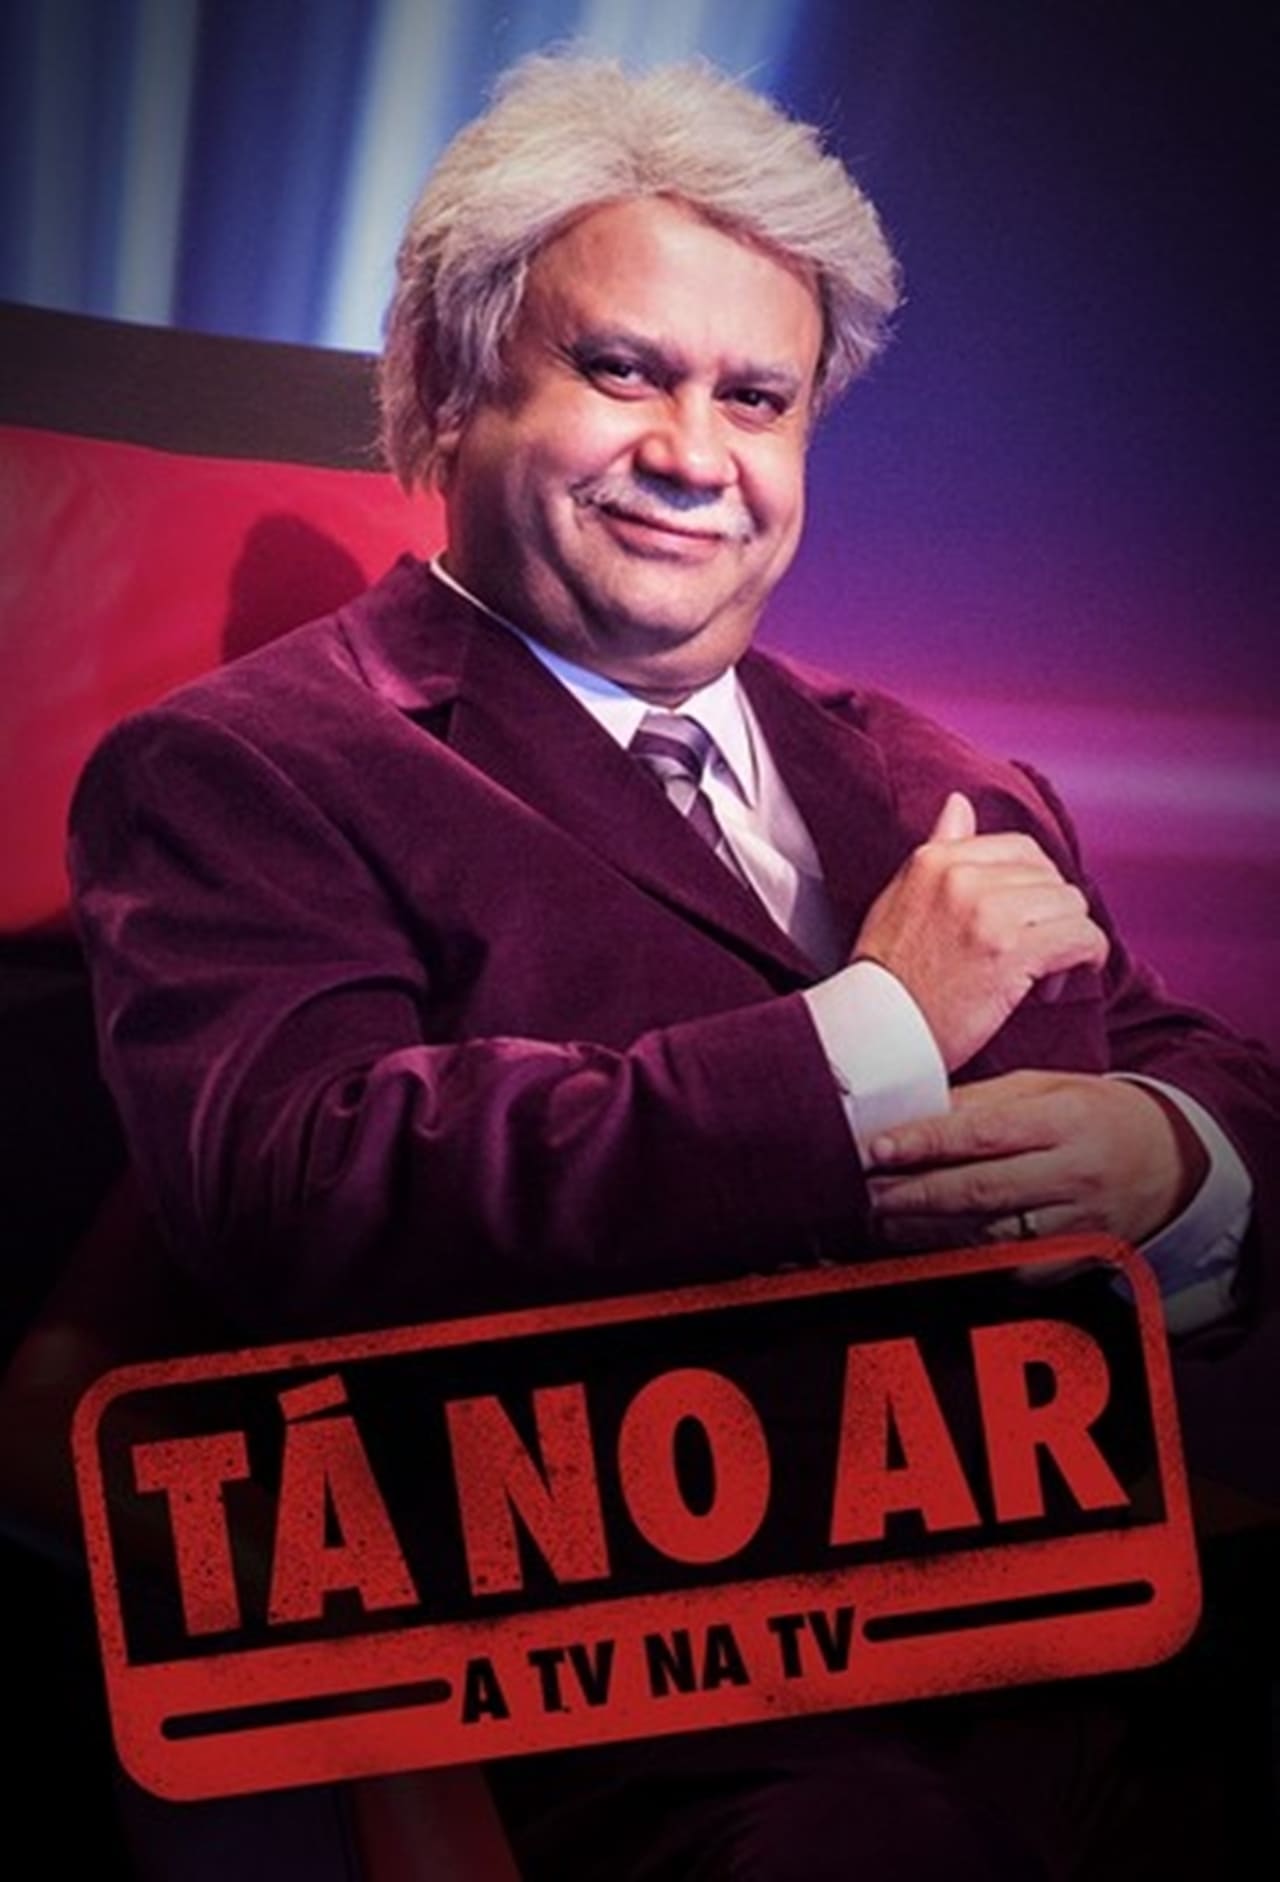 Tá No Ar: A TV Na TV Season 5